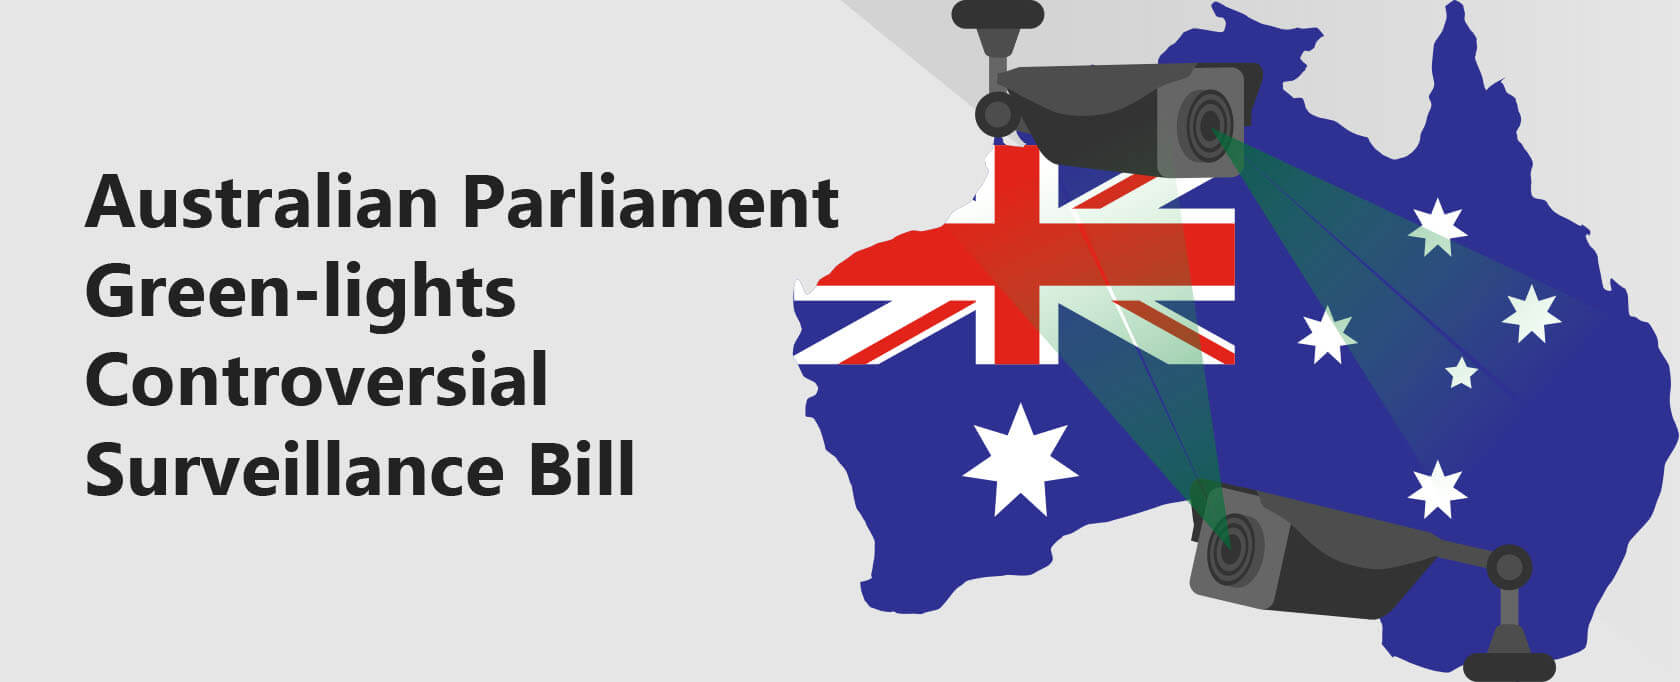 Australian Parliament Green-lights Controversial Surveillance Bill